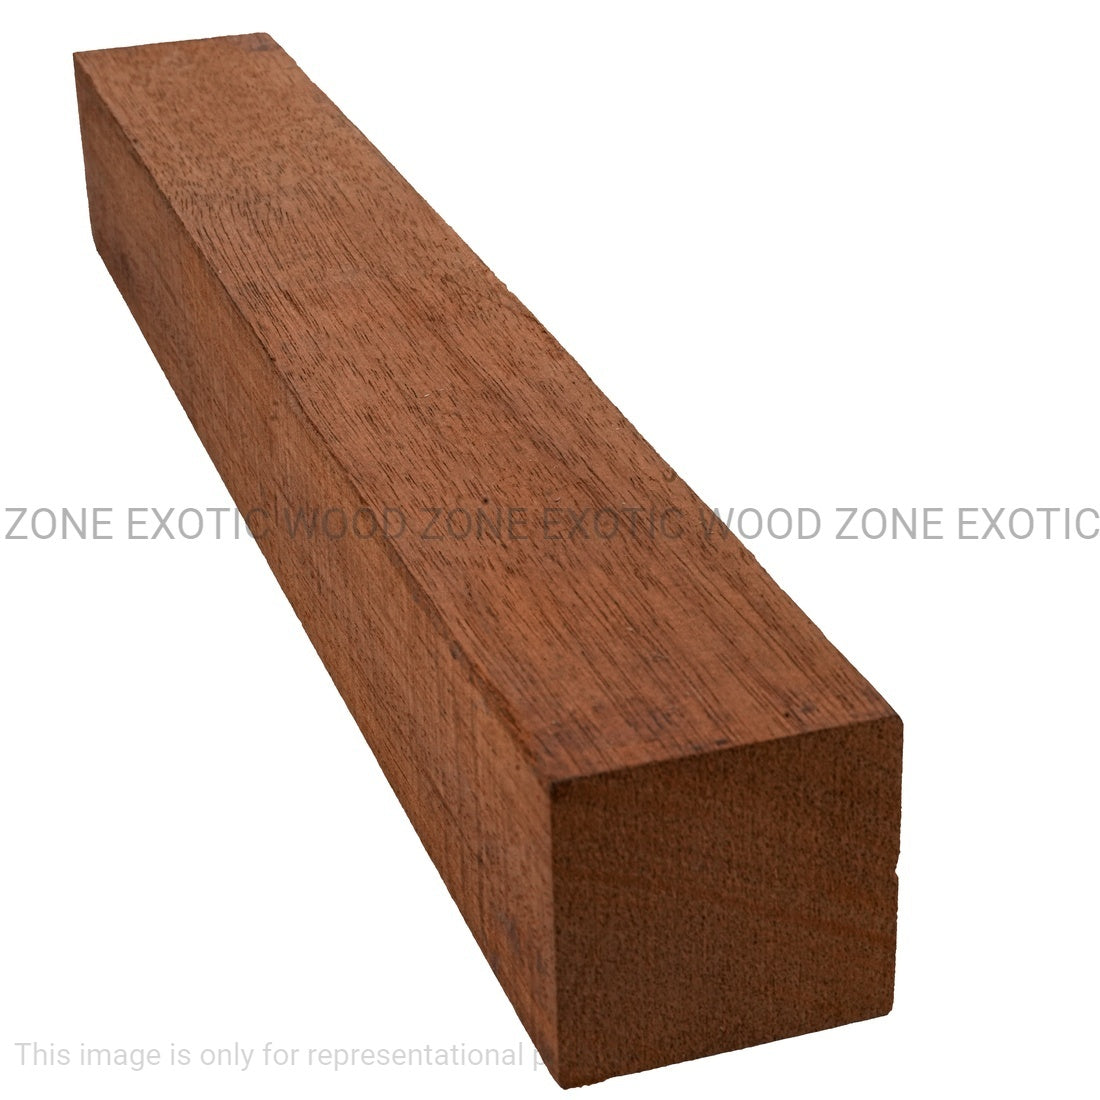 Combo Pack 5, Genuine Honduran Mahogany Turning Blanks 18” x 2” x 2” - Exotic Wood Zone - Buy online Across USA 